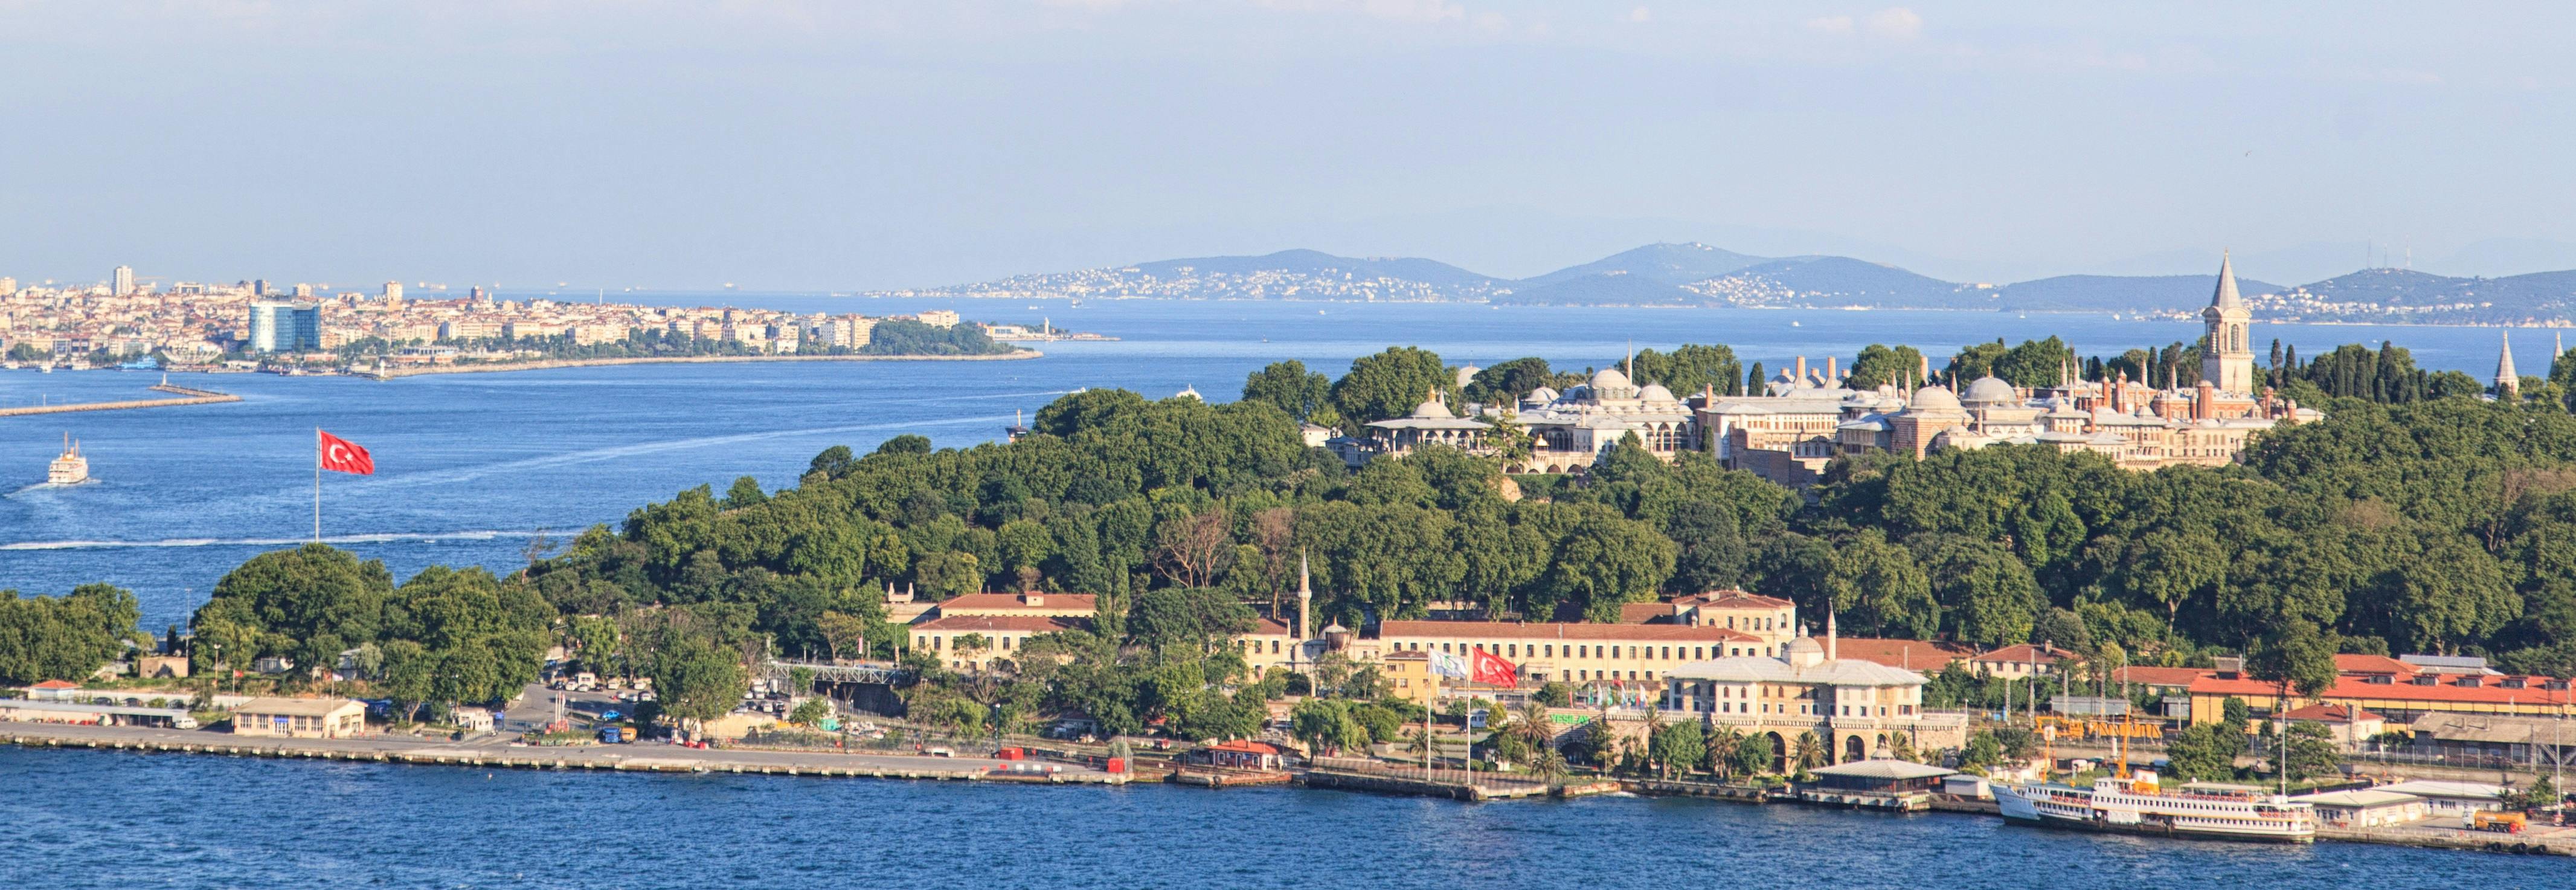 Bilhete sem fila com visita guiada ao Palácio de Topkapı em Istambul